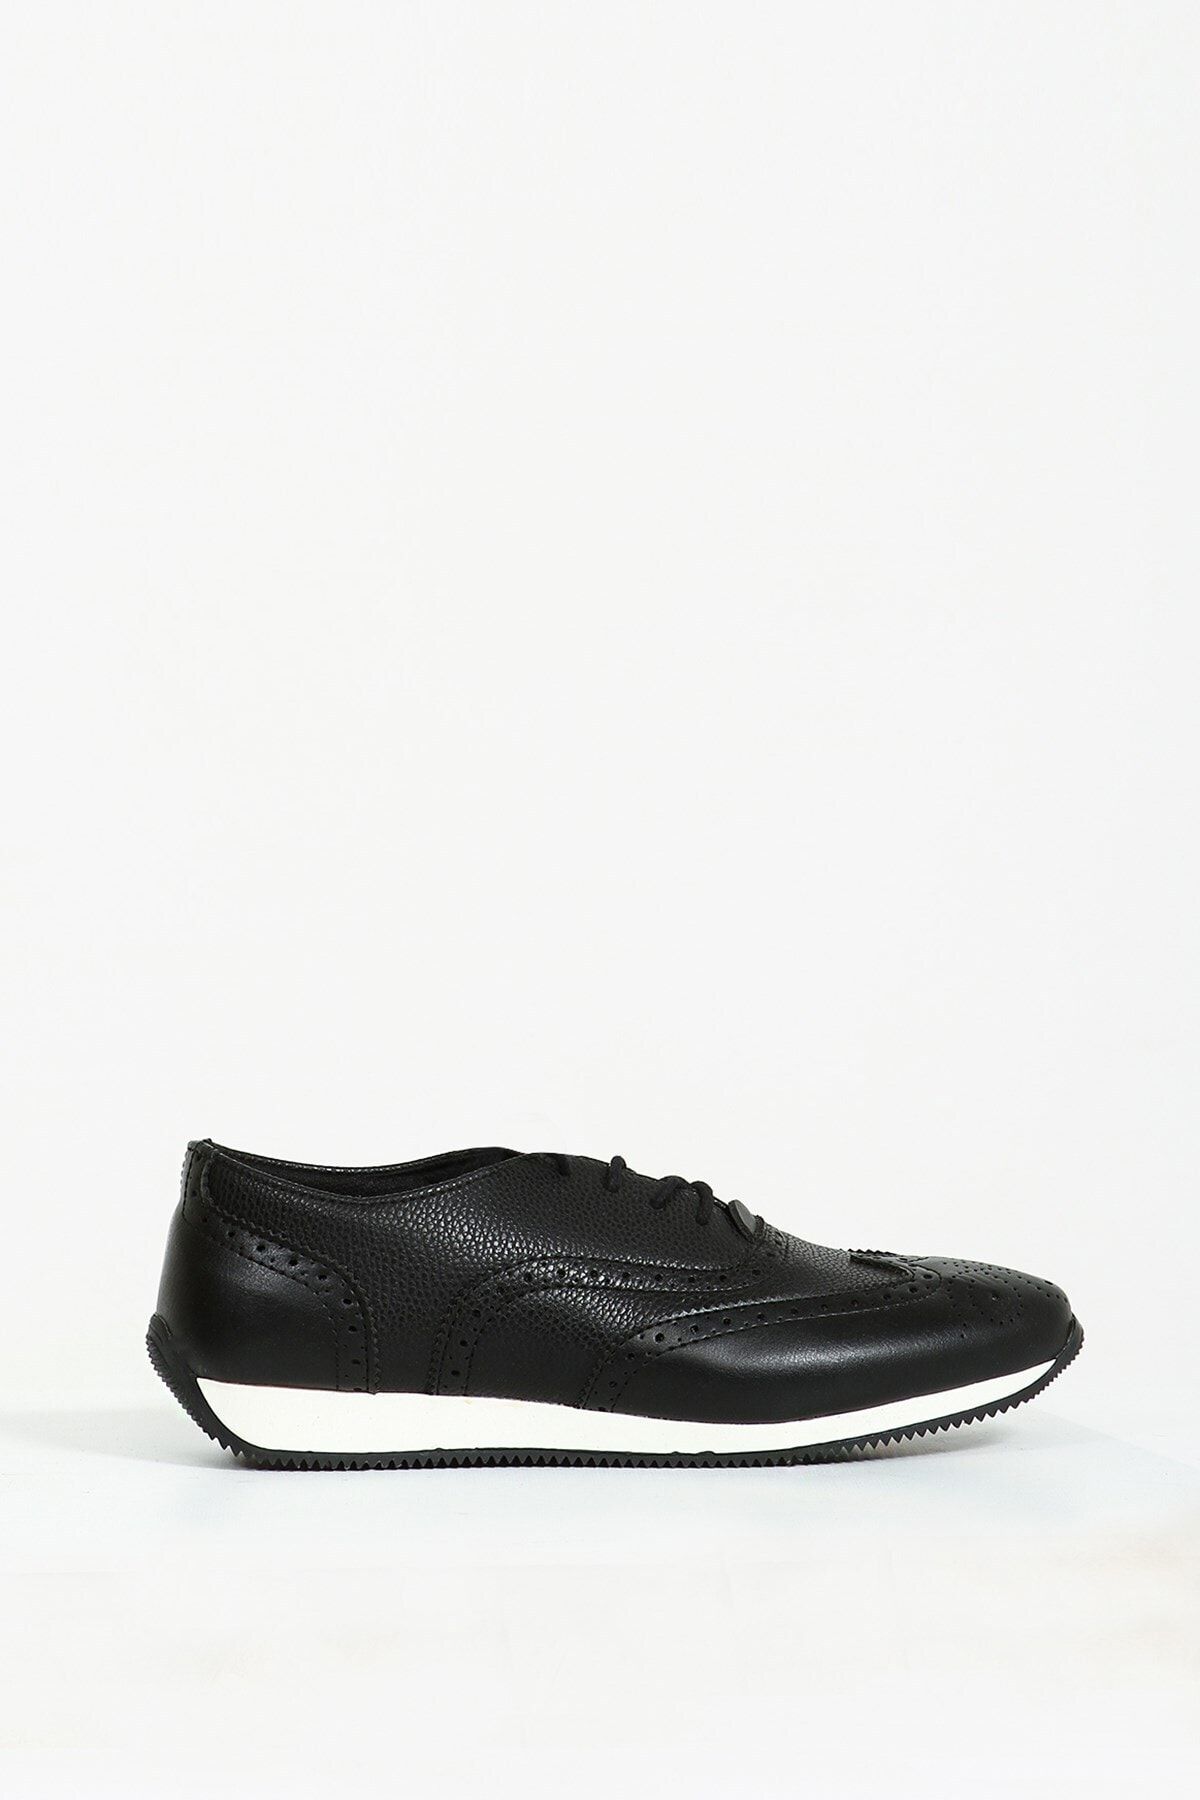 Collezione Siyah Desenli Bağcıklı Erkek Ayakkabı